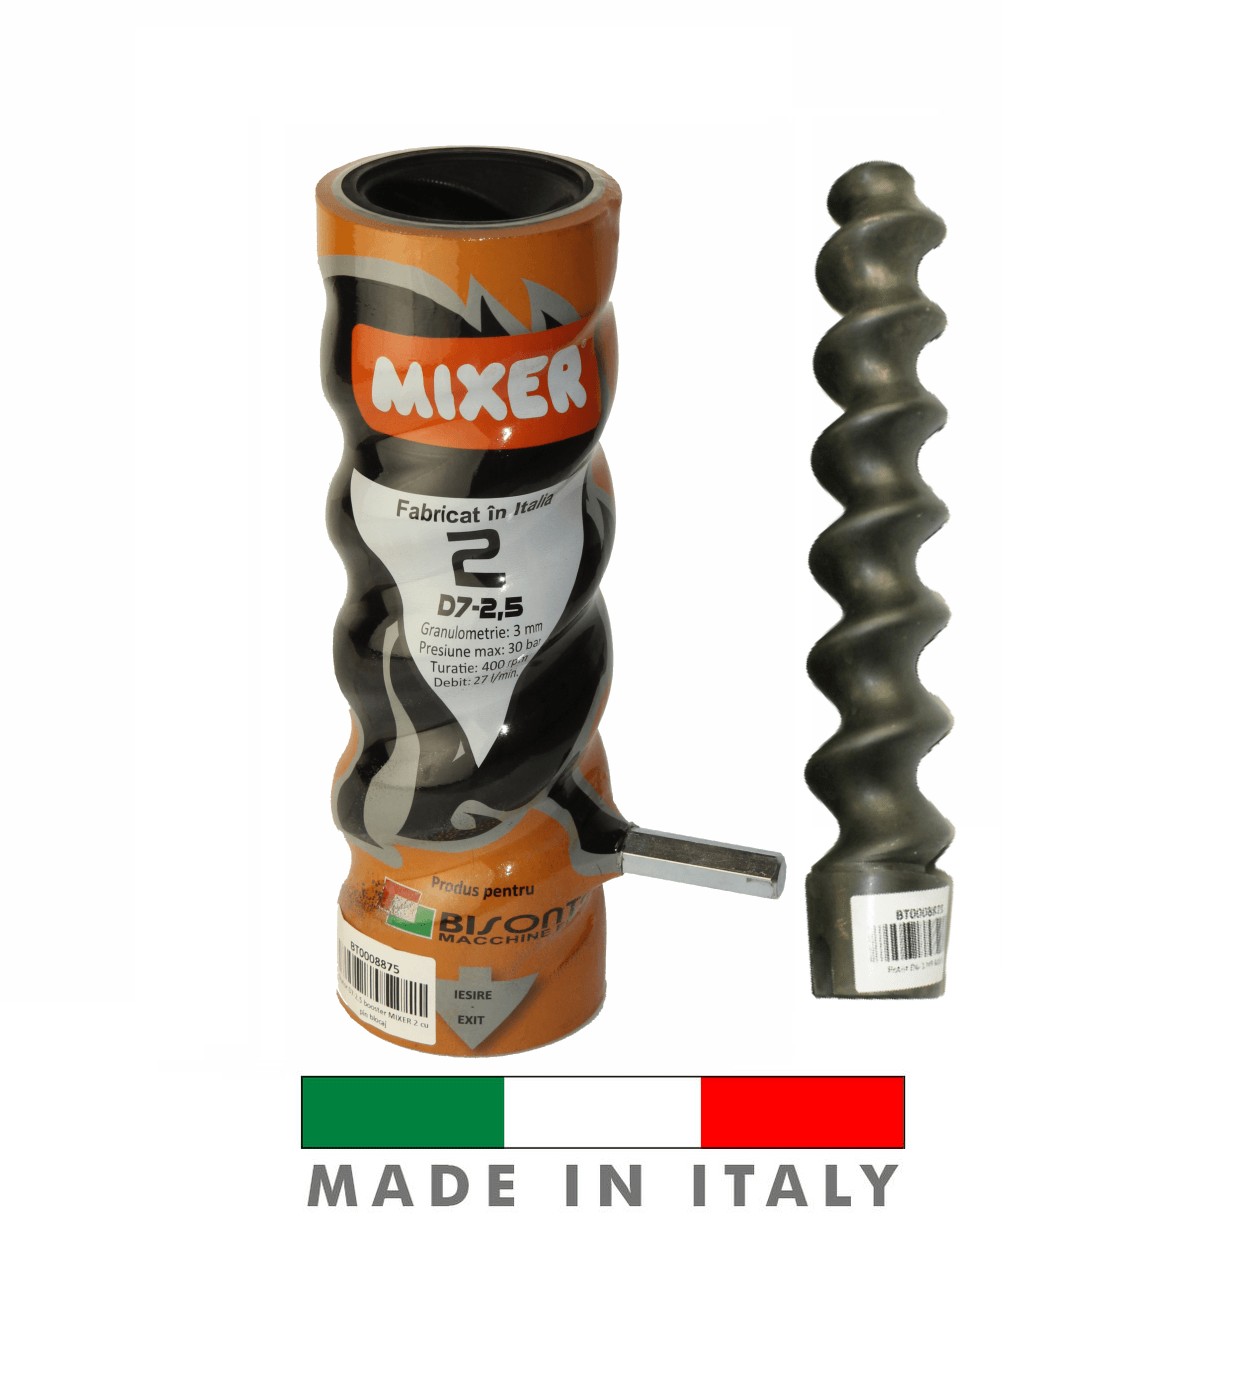 Stator Mixer 2 Italia D6 3 twister